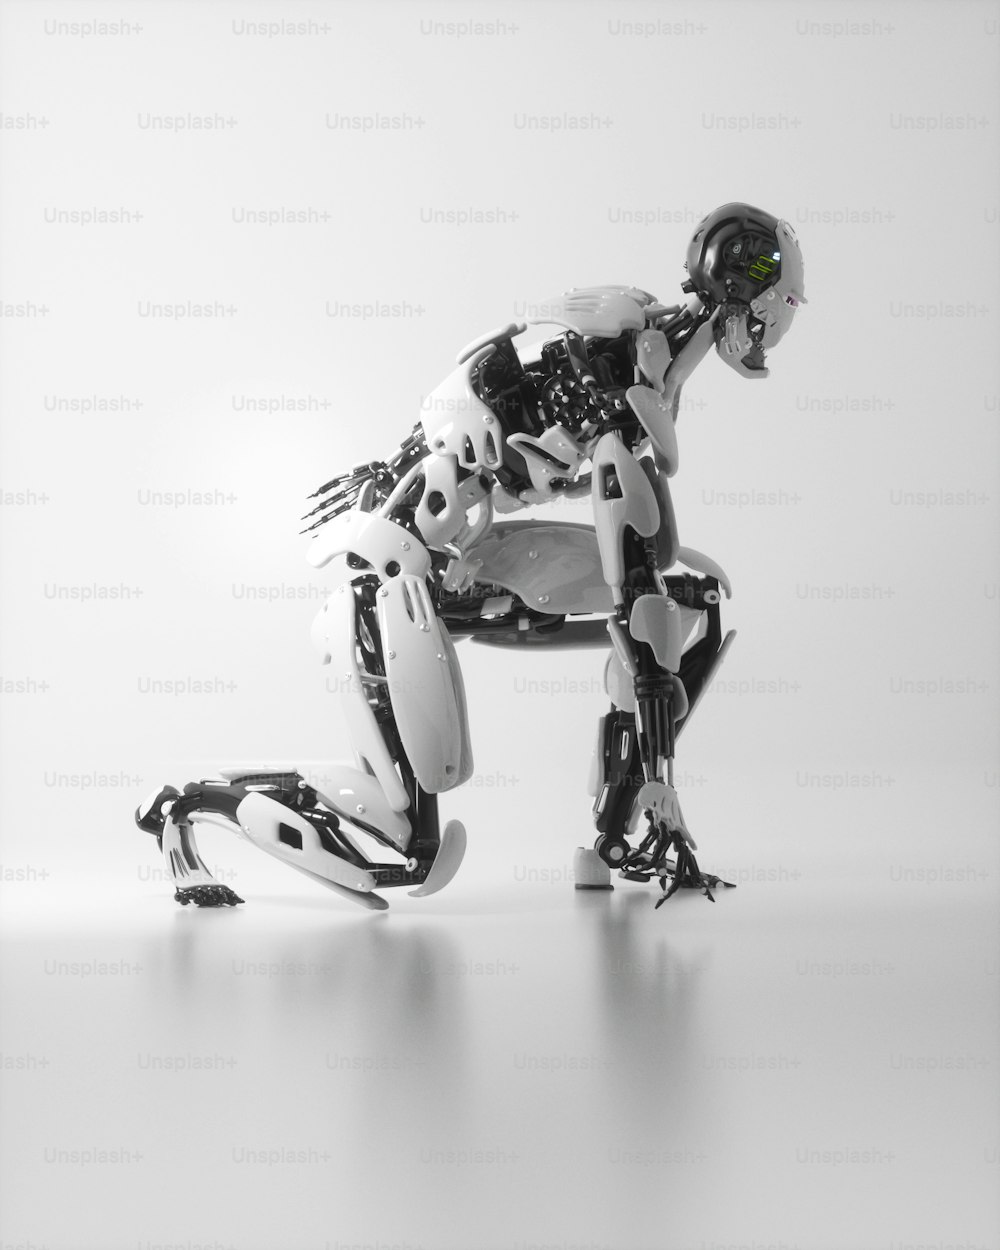 Una foto en blanco y negro de un robot